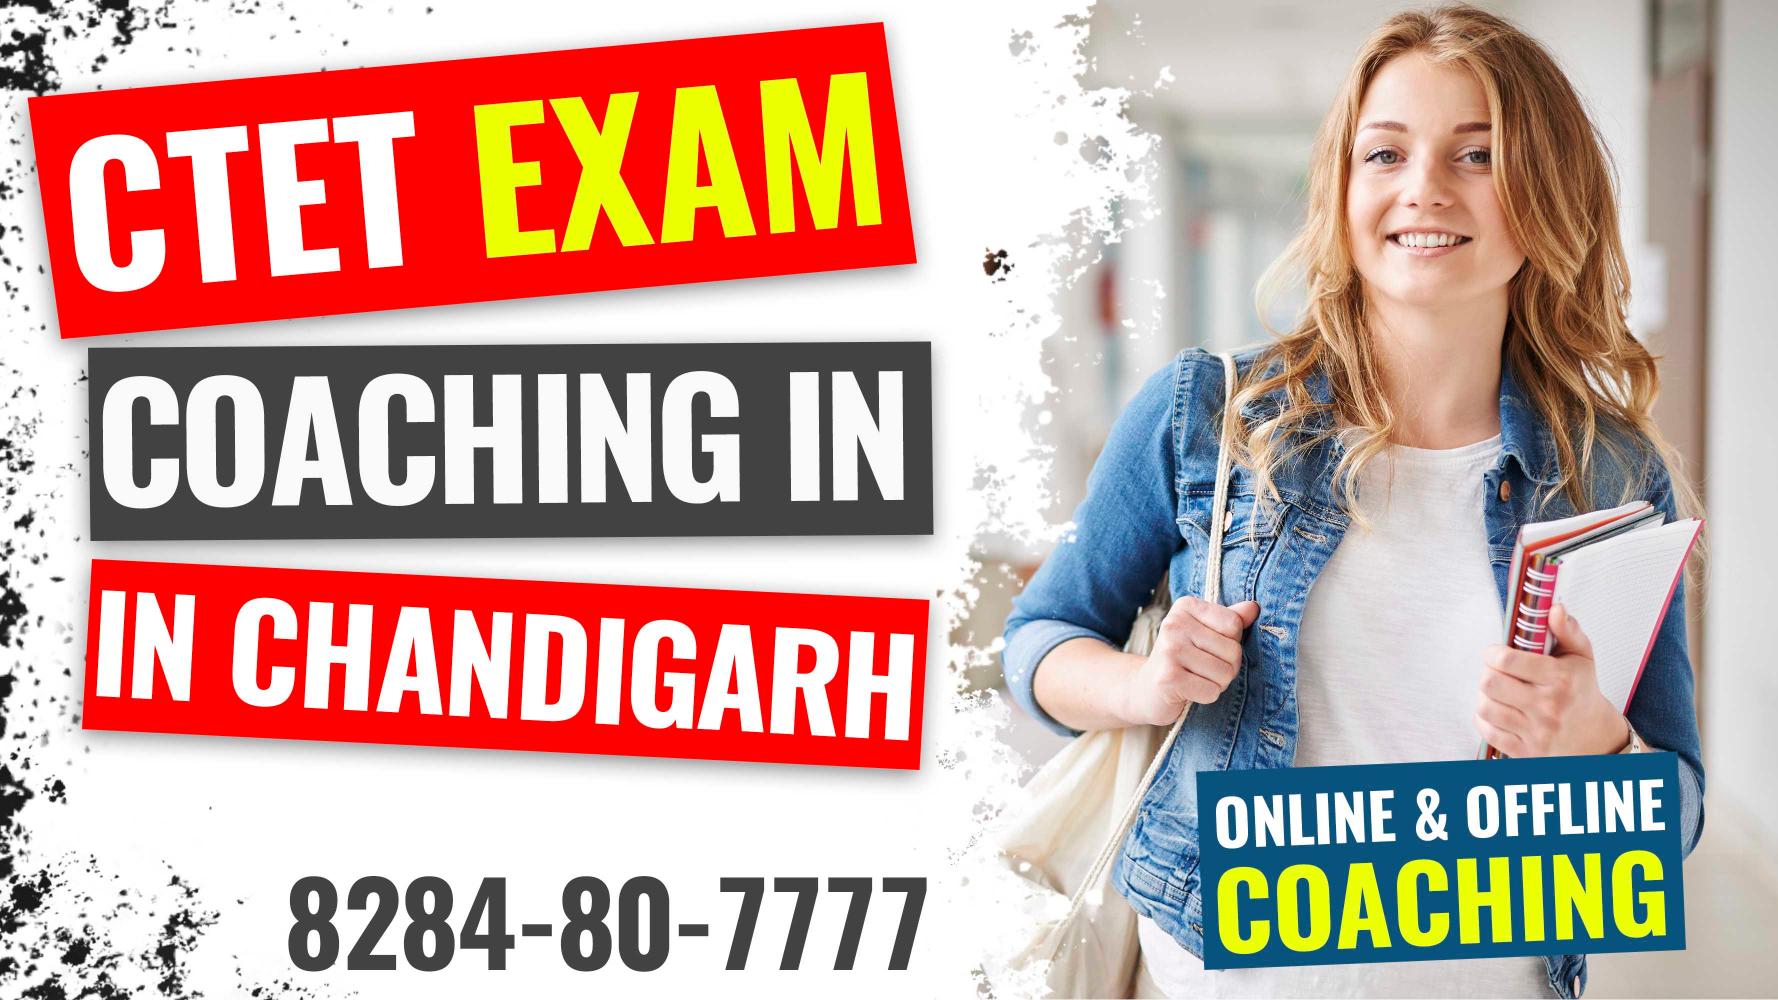 CTET Exam Coaching in Chandigarh - Paramount Chandigarh